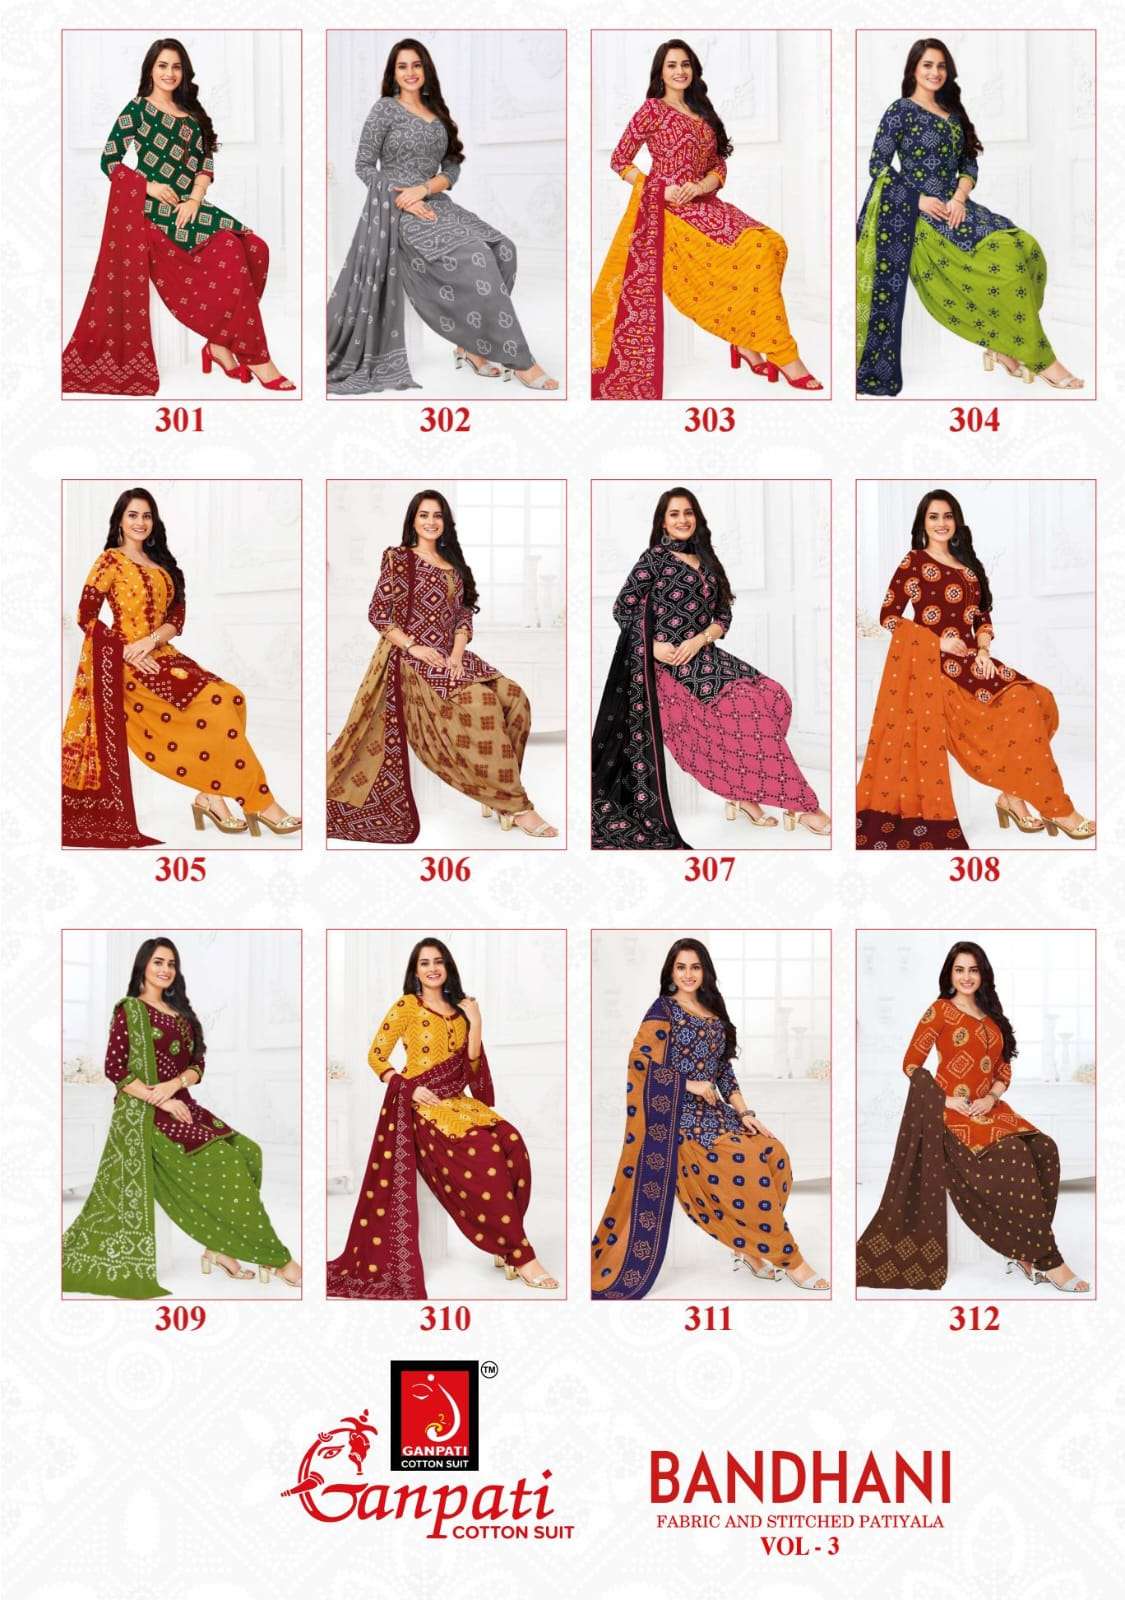 ganpati cotton suit bandhani vol 3 301-312 series patiyala salwar kameez 